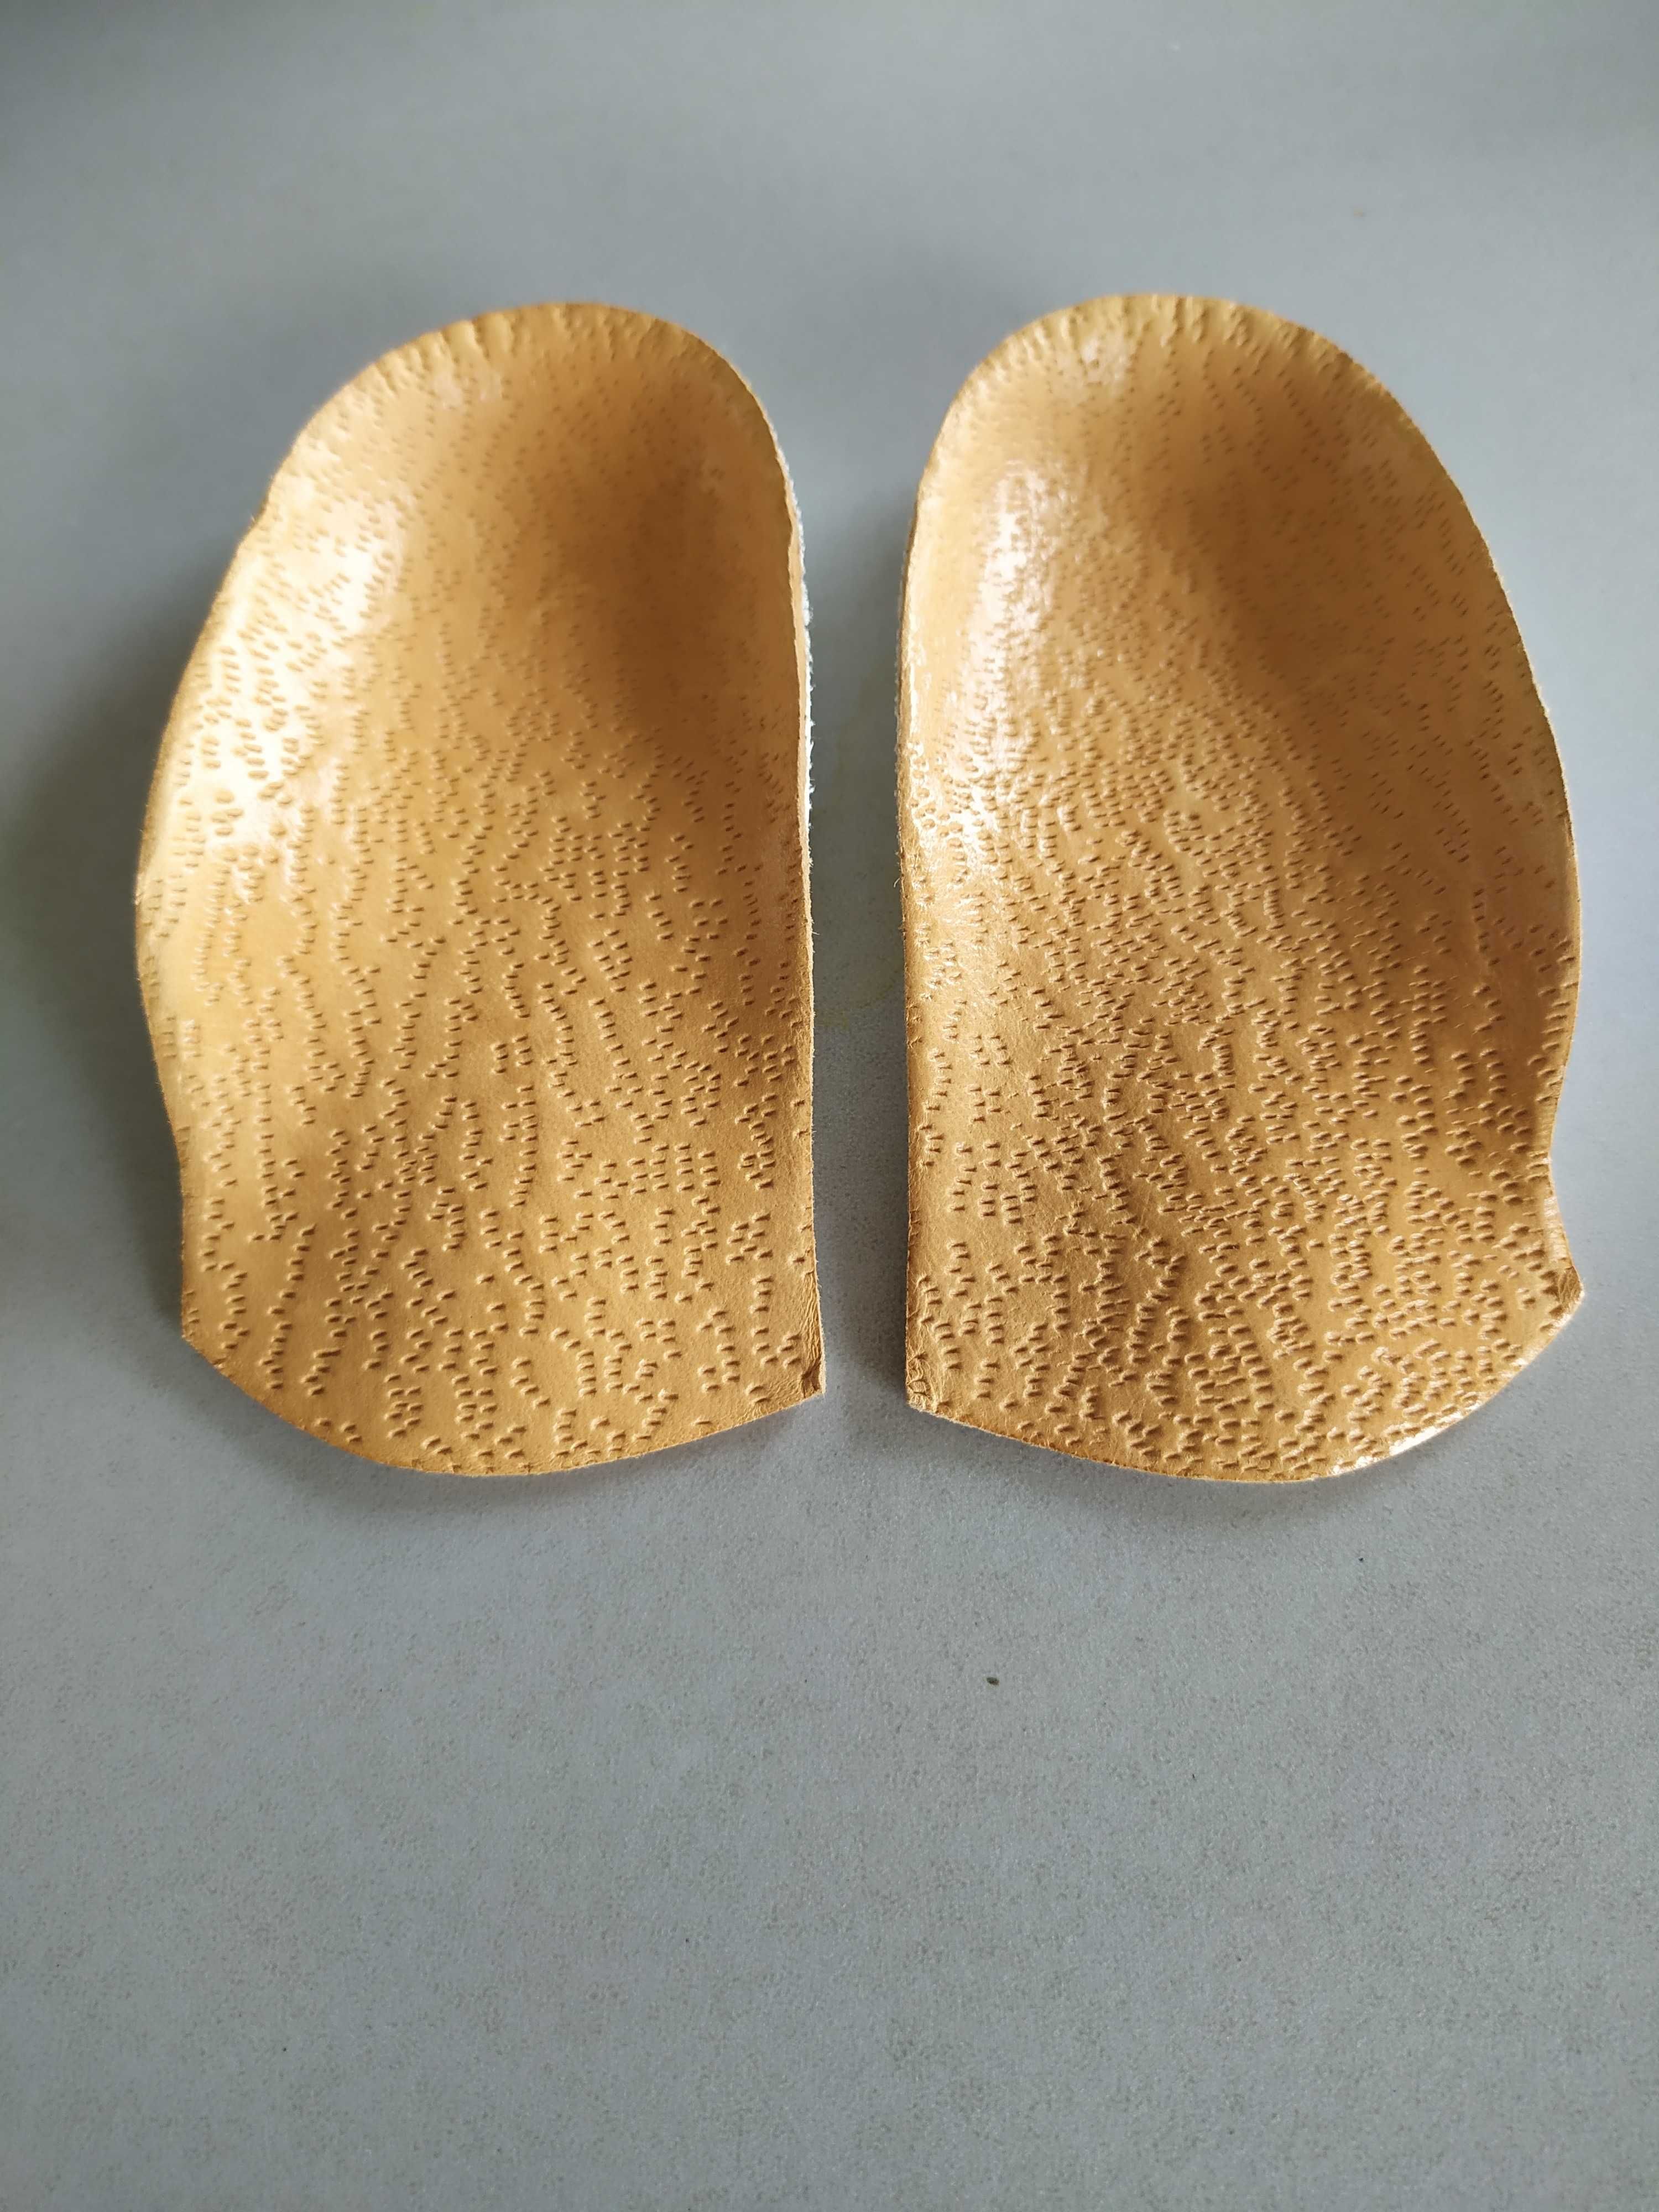 Wkładki supinujące nowe korytkowe rozmiar 26 do butów 17,5 cm